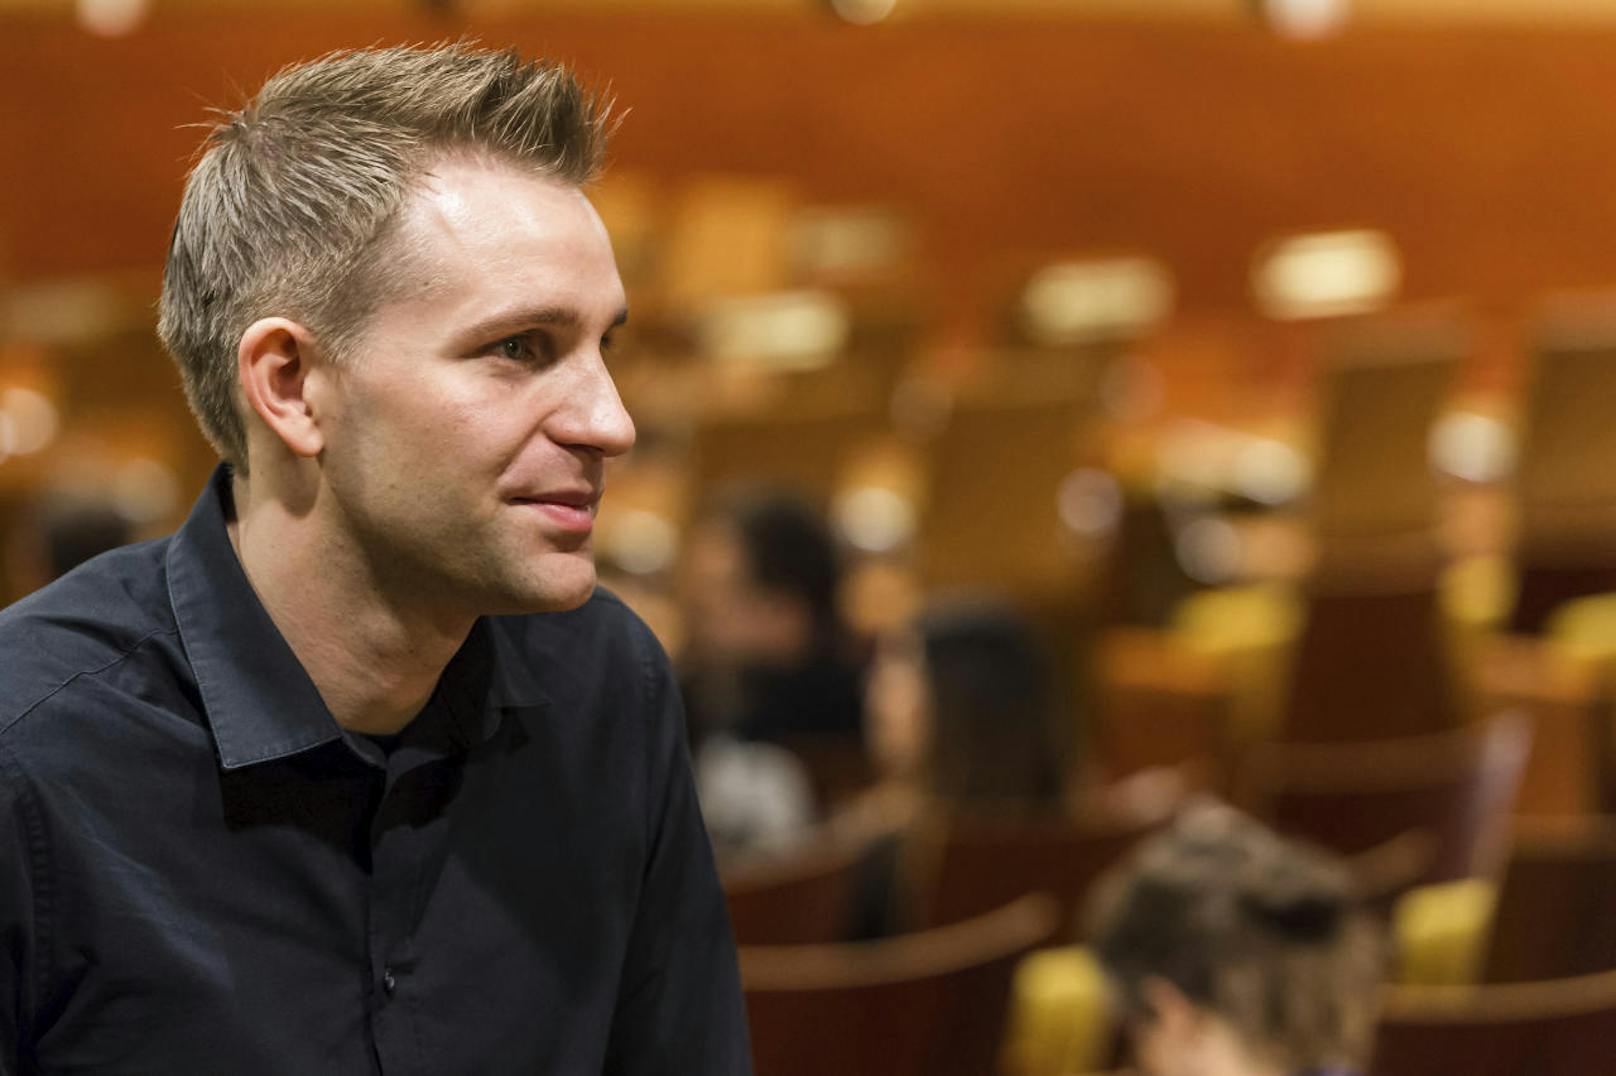 Der österreichische Jurist und Datenschützer Max Schrems konnte einen Etappenerfolg gegen Facebook erringen.